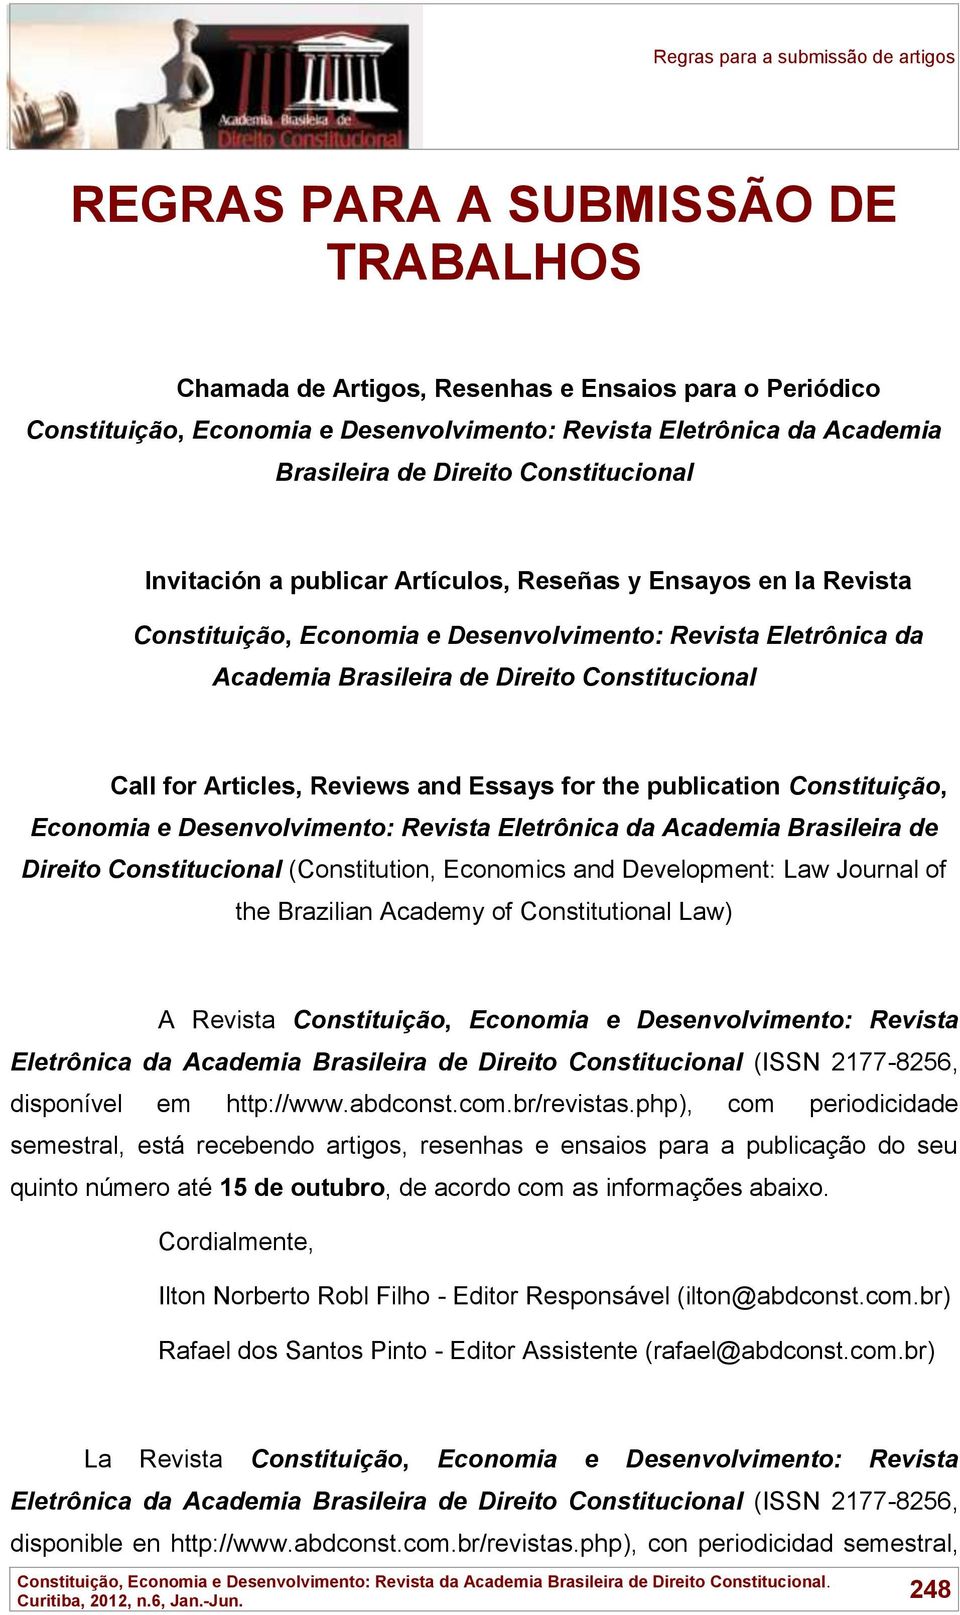 Articles, Reviews and Essays for the publication Constituição, Economia e Desenvolvimento: Revista Eletrônica da Academia Brasileira de Direito Constitucional (Constitution, Economics and